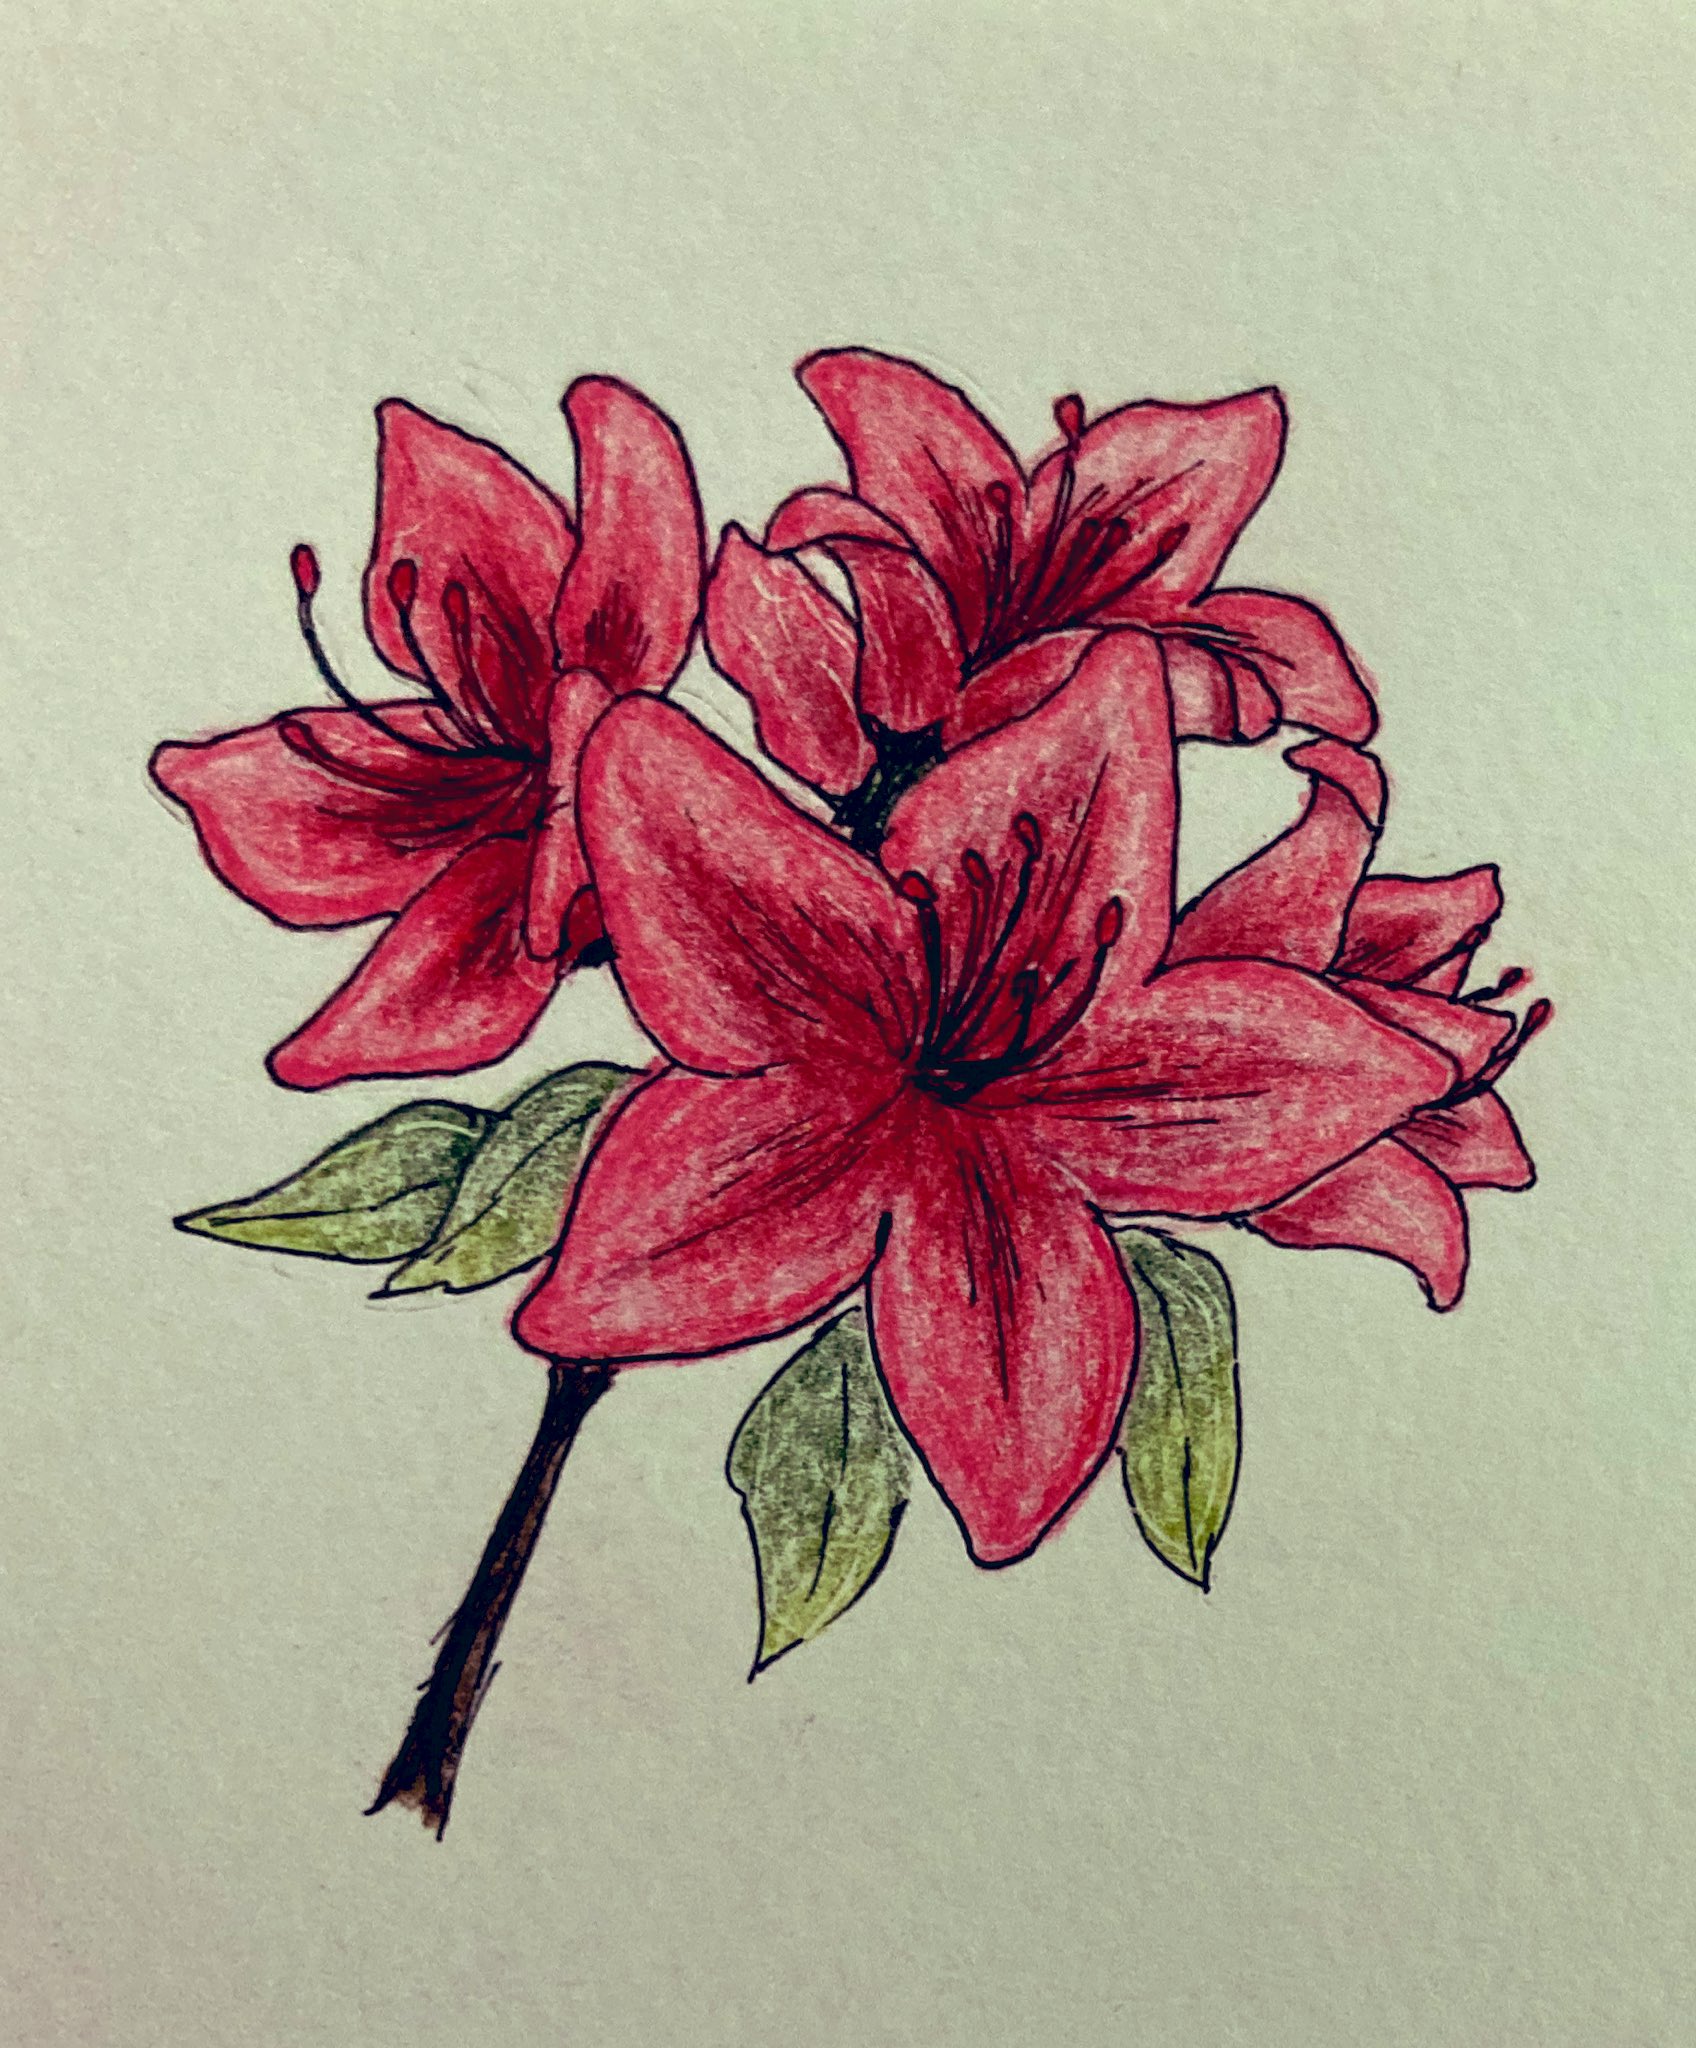 ナナ 5月の花 サツキ さつき イラスト 色鉛筆 花のイラスト T Co Uwkfu5qz5d Twitter